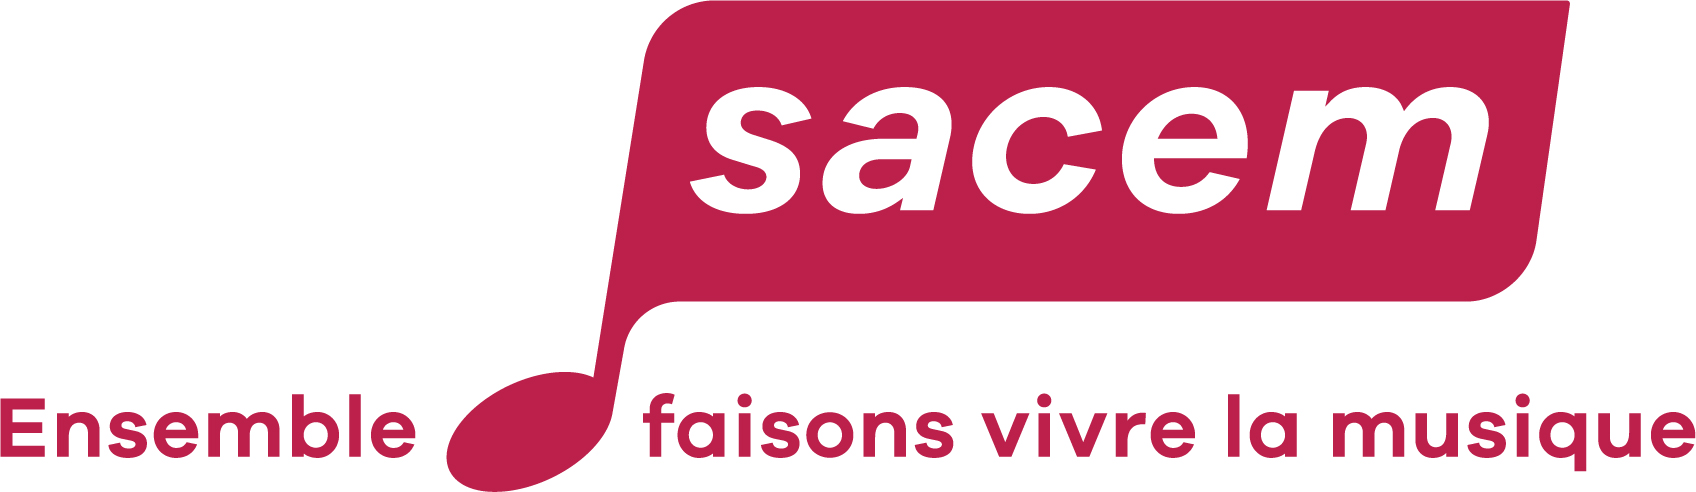 Couvre-feu : la Sacem annonce de nouvelles mesures pour soutenir ses clients utilisateurs de musique